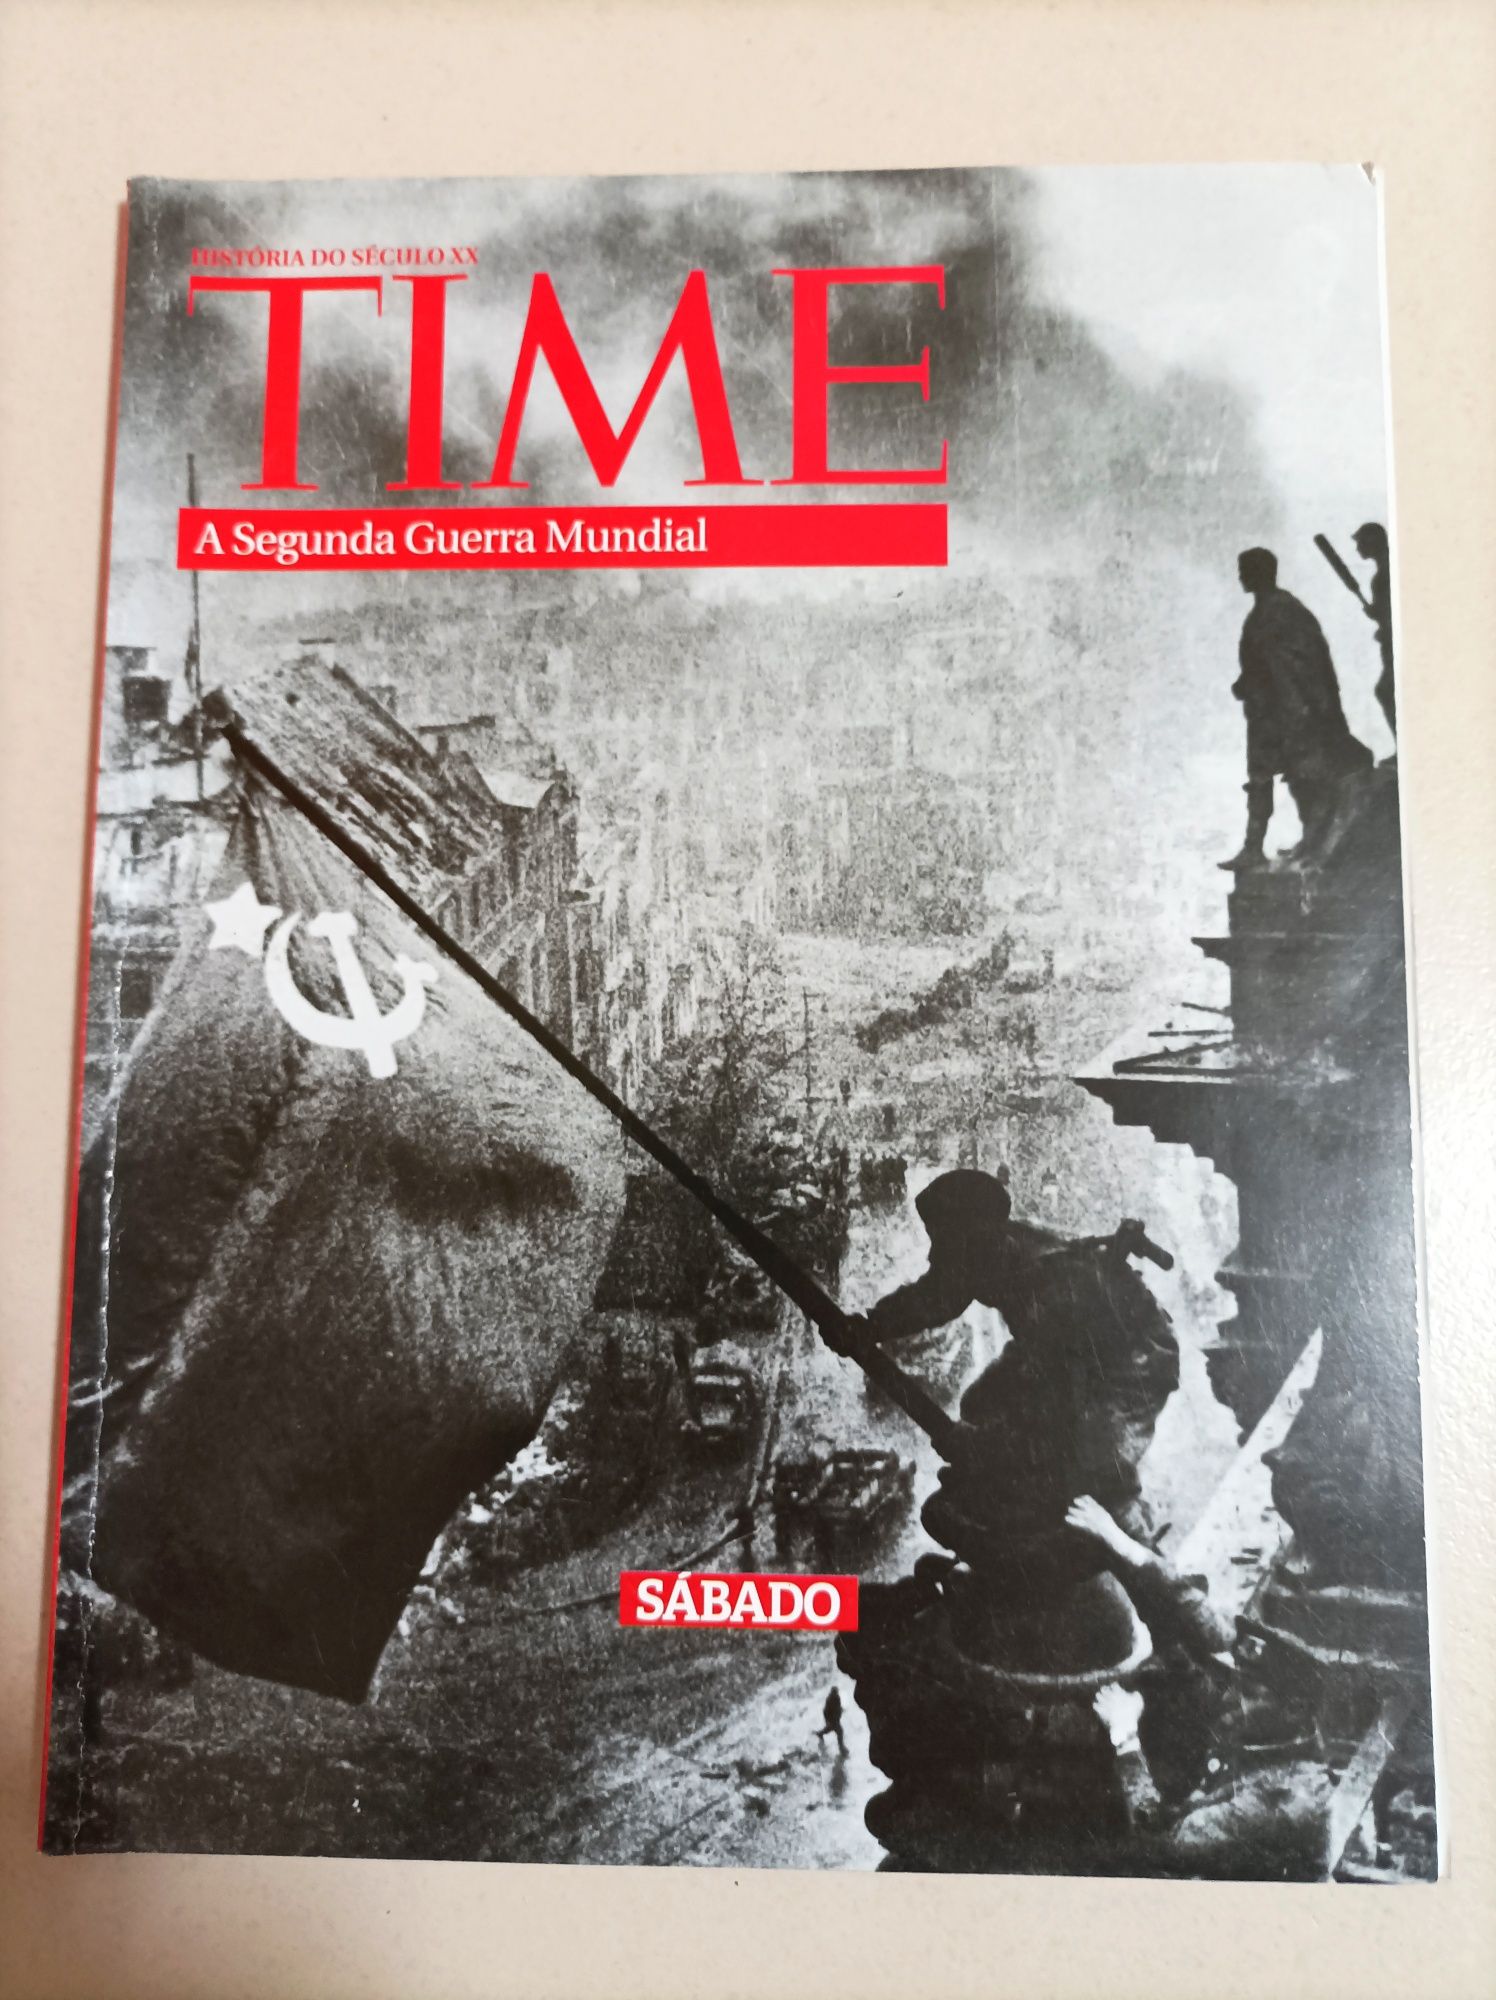 A História do Século XX - Coleção revistas Time (Sábado)